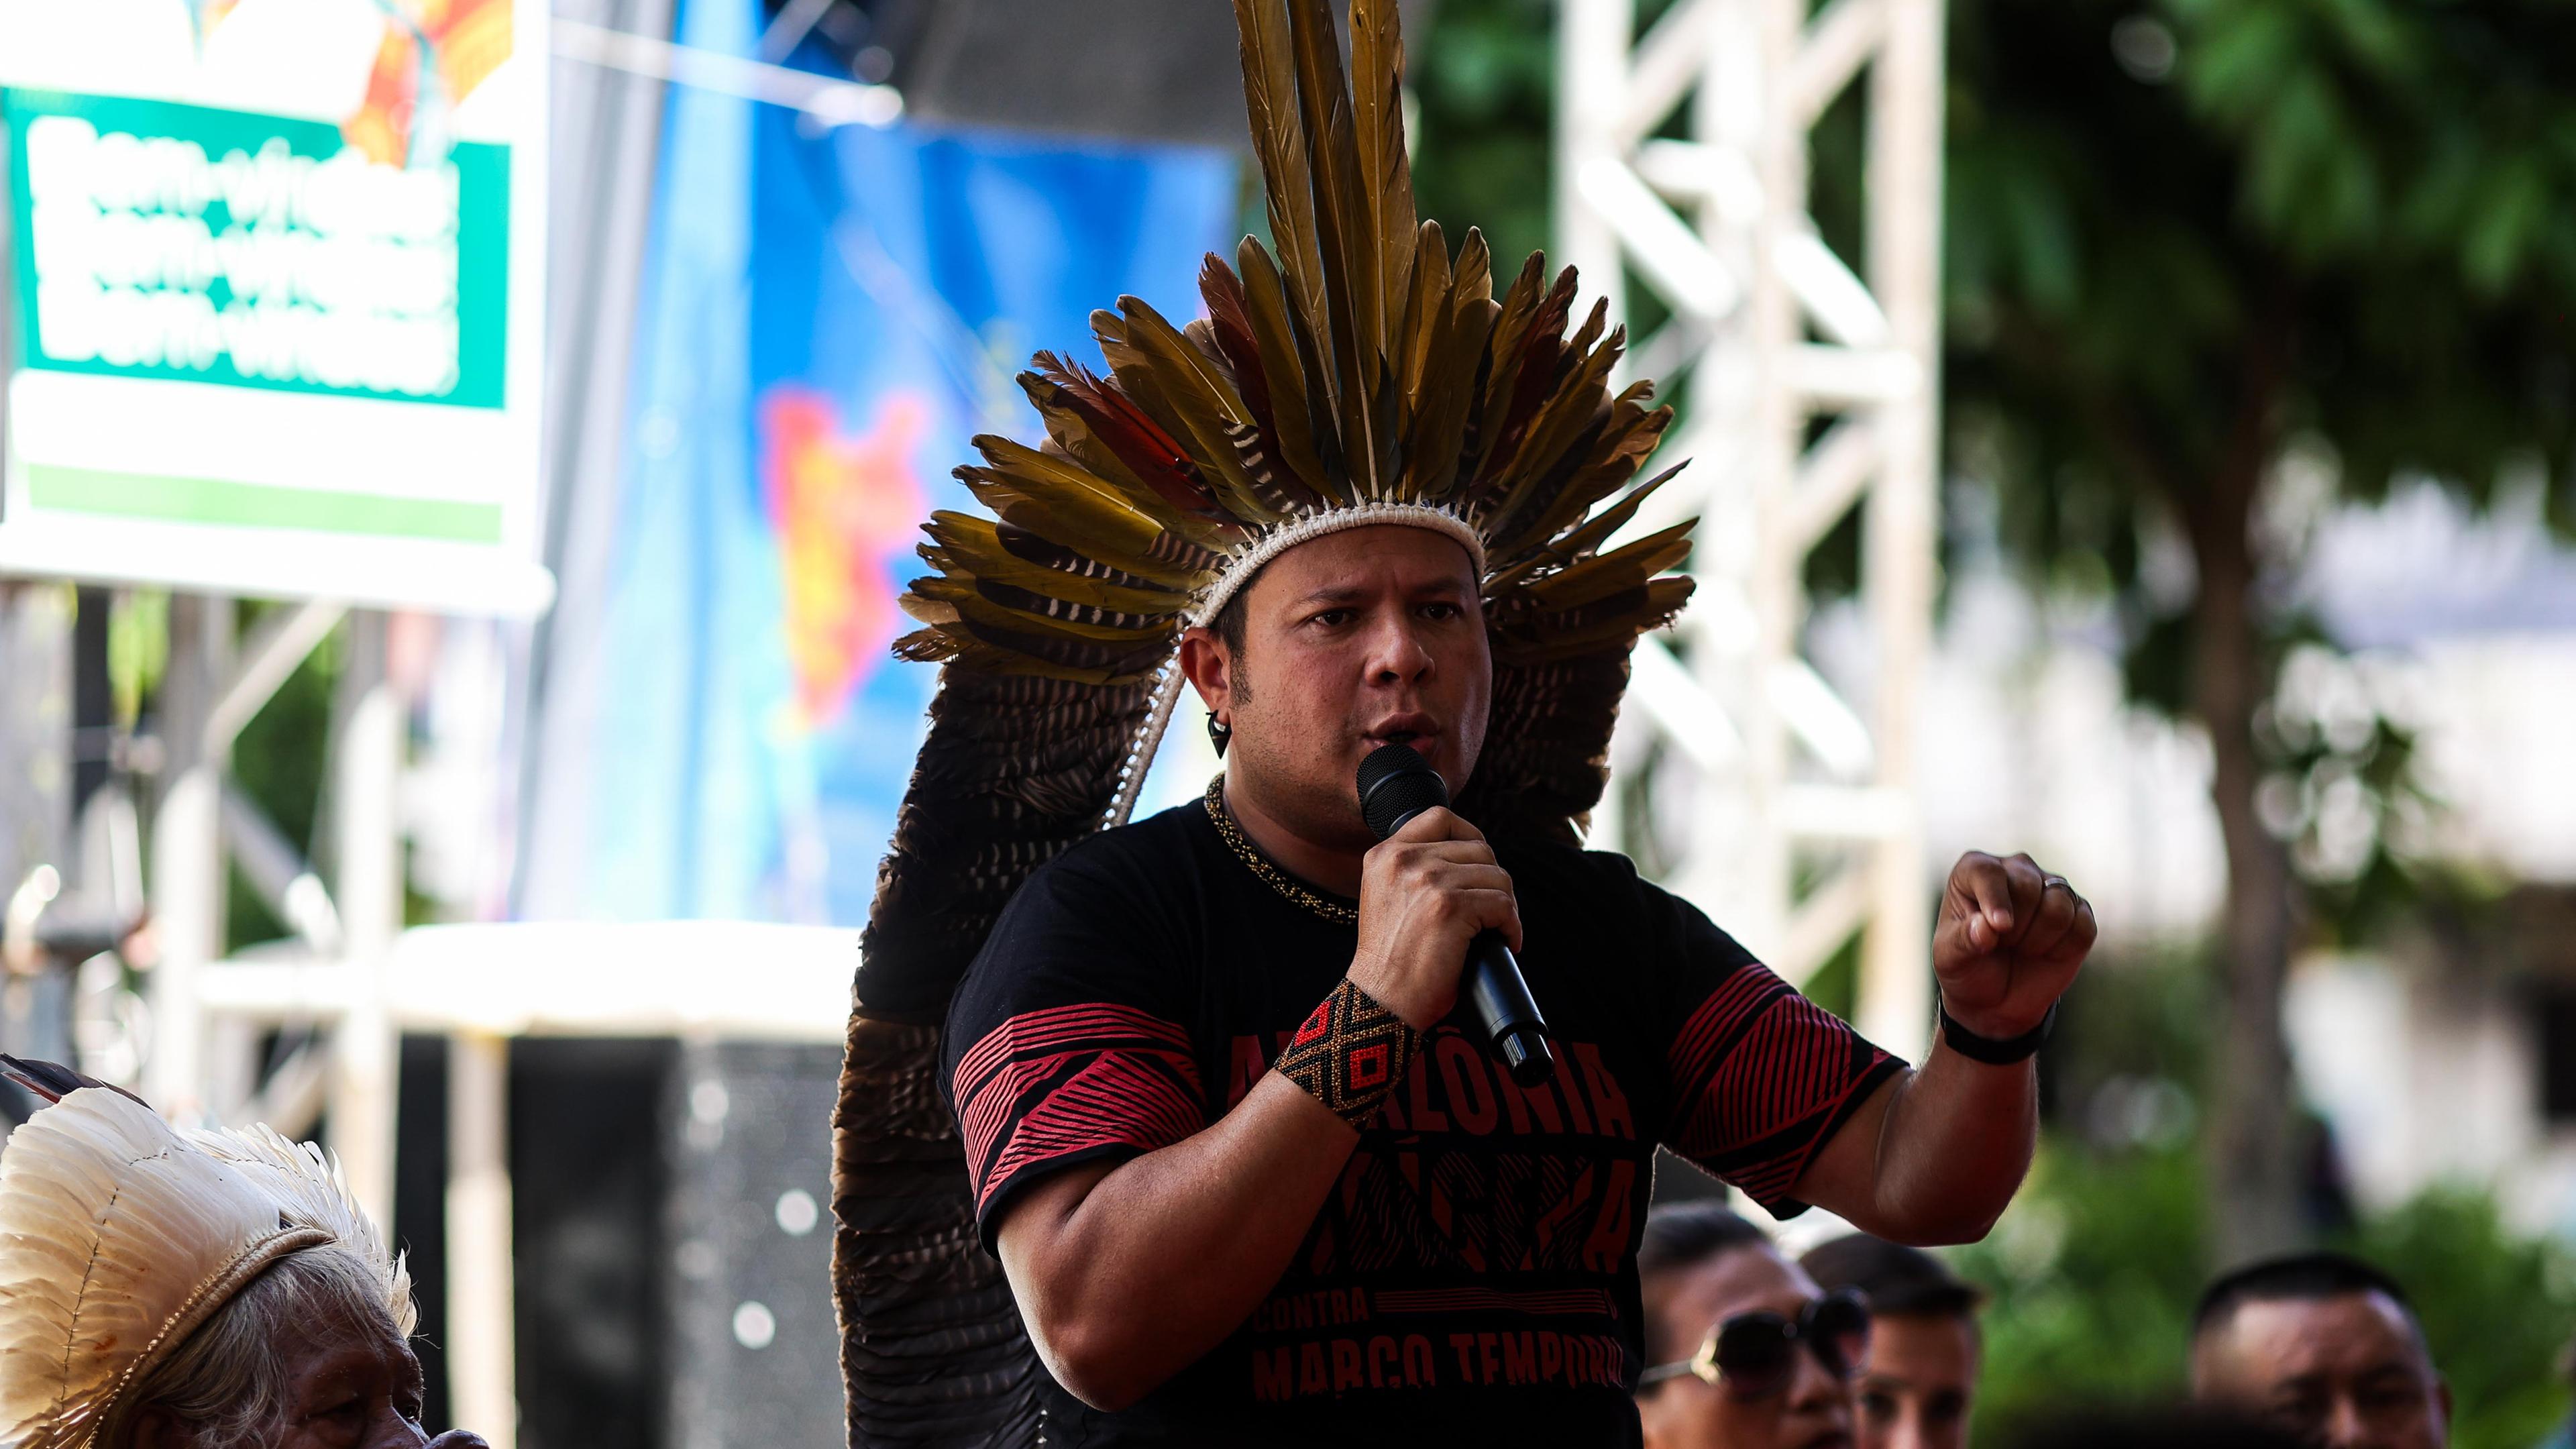 Kleber Karipuna, Präsident des Indigenen-Verbands Coiab spricht beim Treffen indigener Völker in Belém, Brasilien.